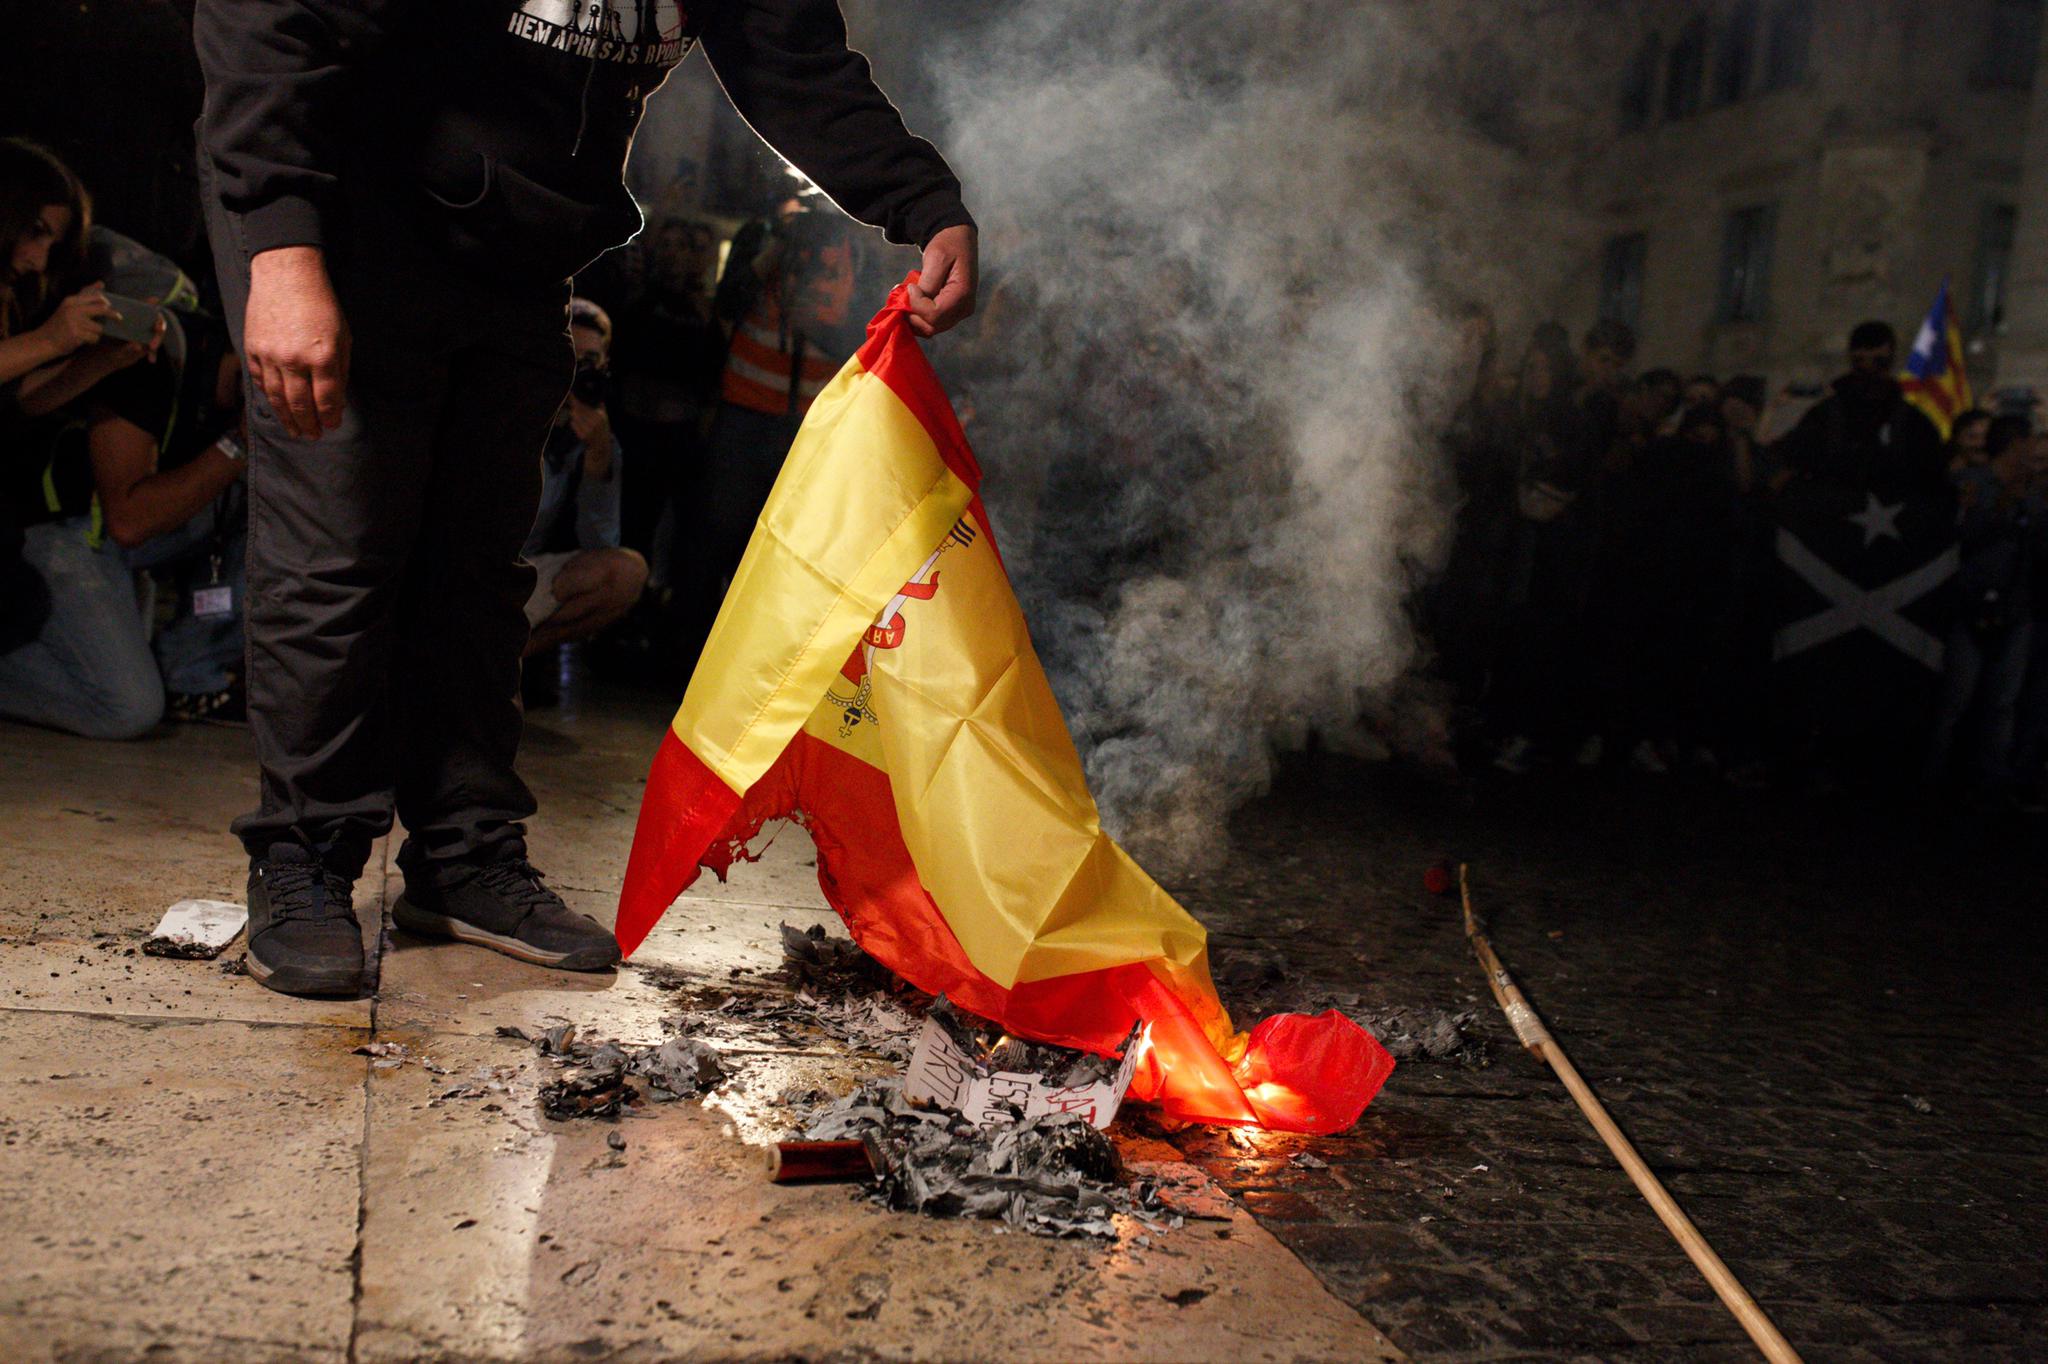 Absuelto un independentista por quemar una bandera española: jurisprudencia europea frente al Supremo